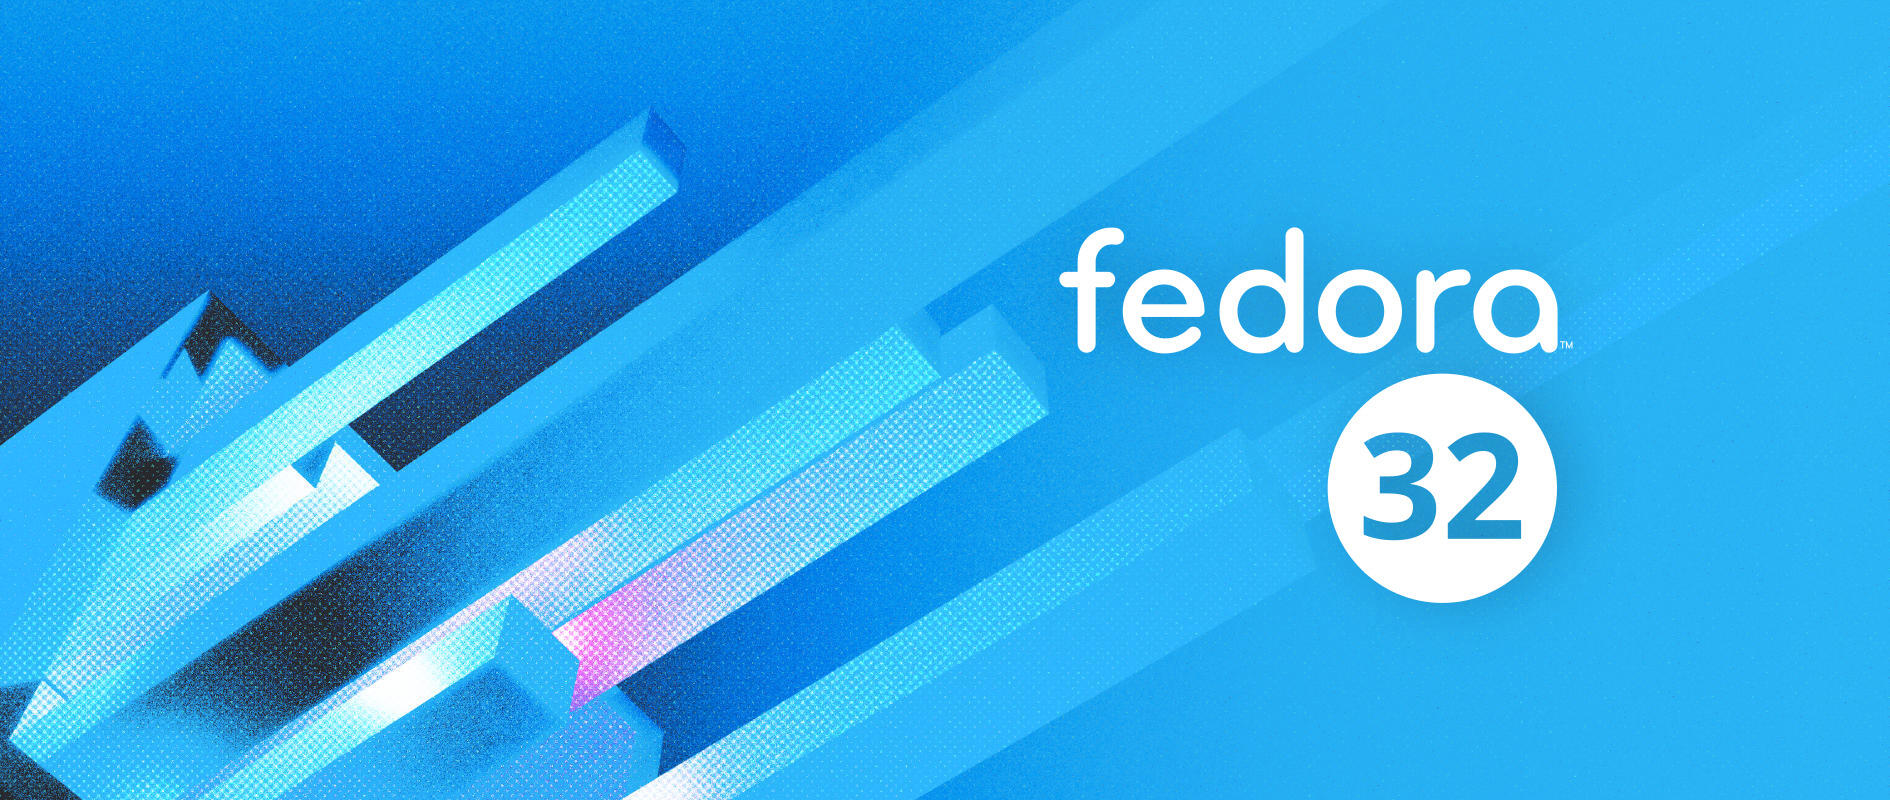 Immagine pubblicata in relazione al seguente contenuto: Fedora Project rilascia Fedora 32 per sistemi desktop, server e container | Nome immagine: news30692_Fedora-32_2.jpg